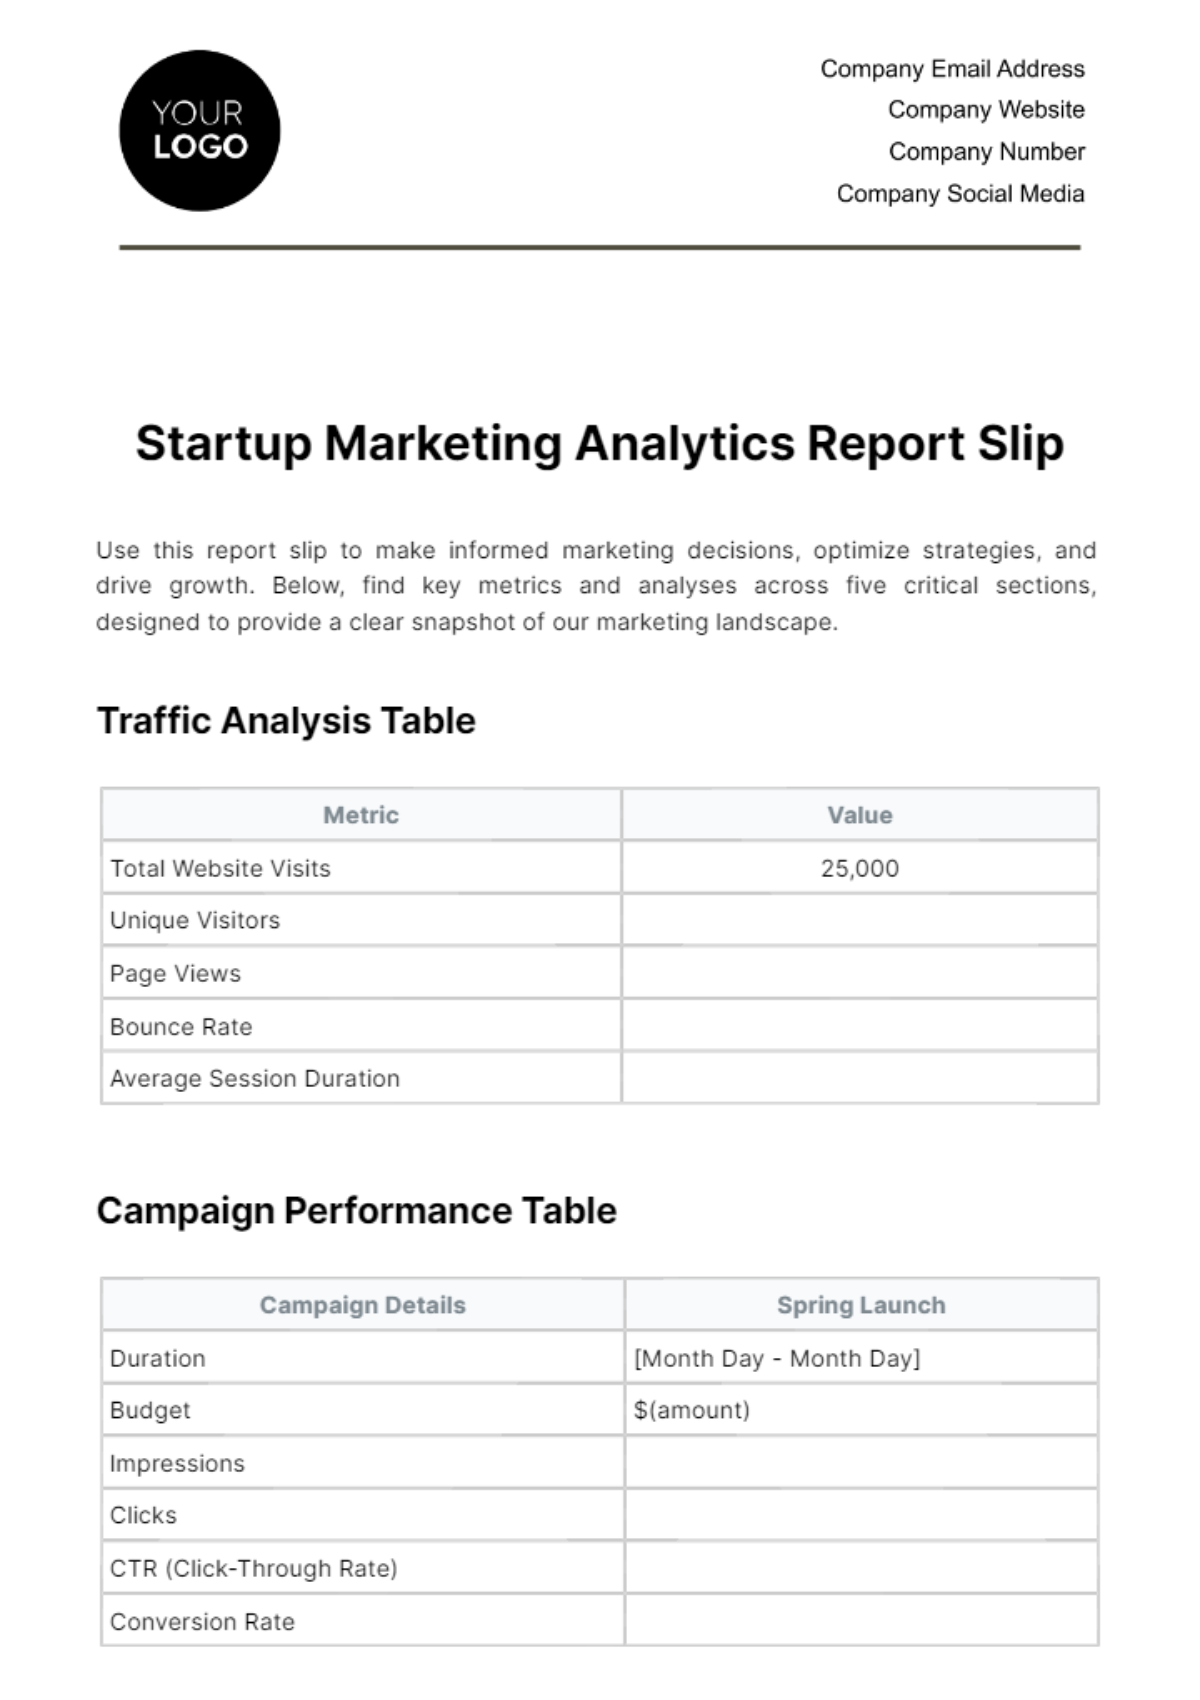 Startup Marketing Analytics Report Slip Template